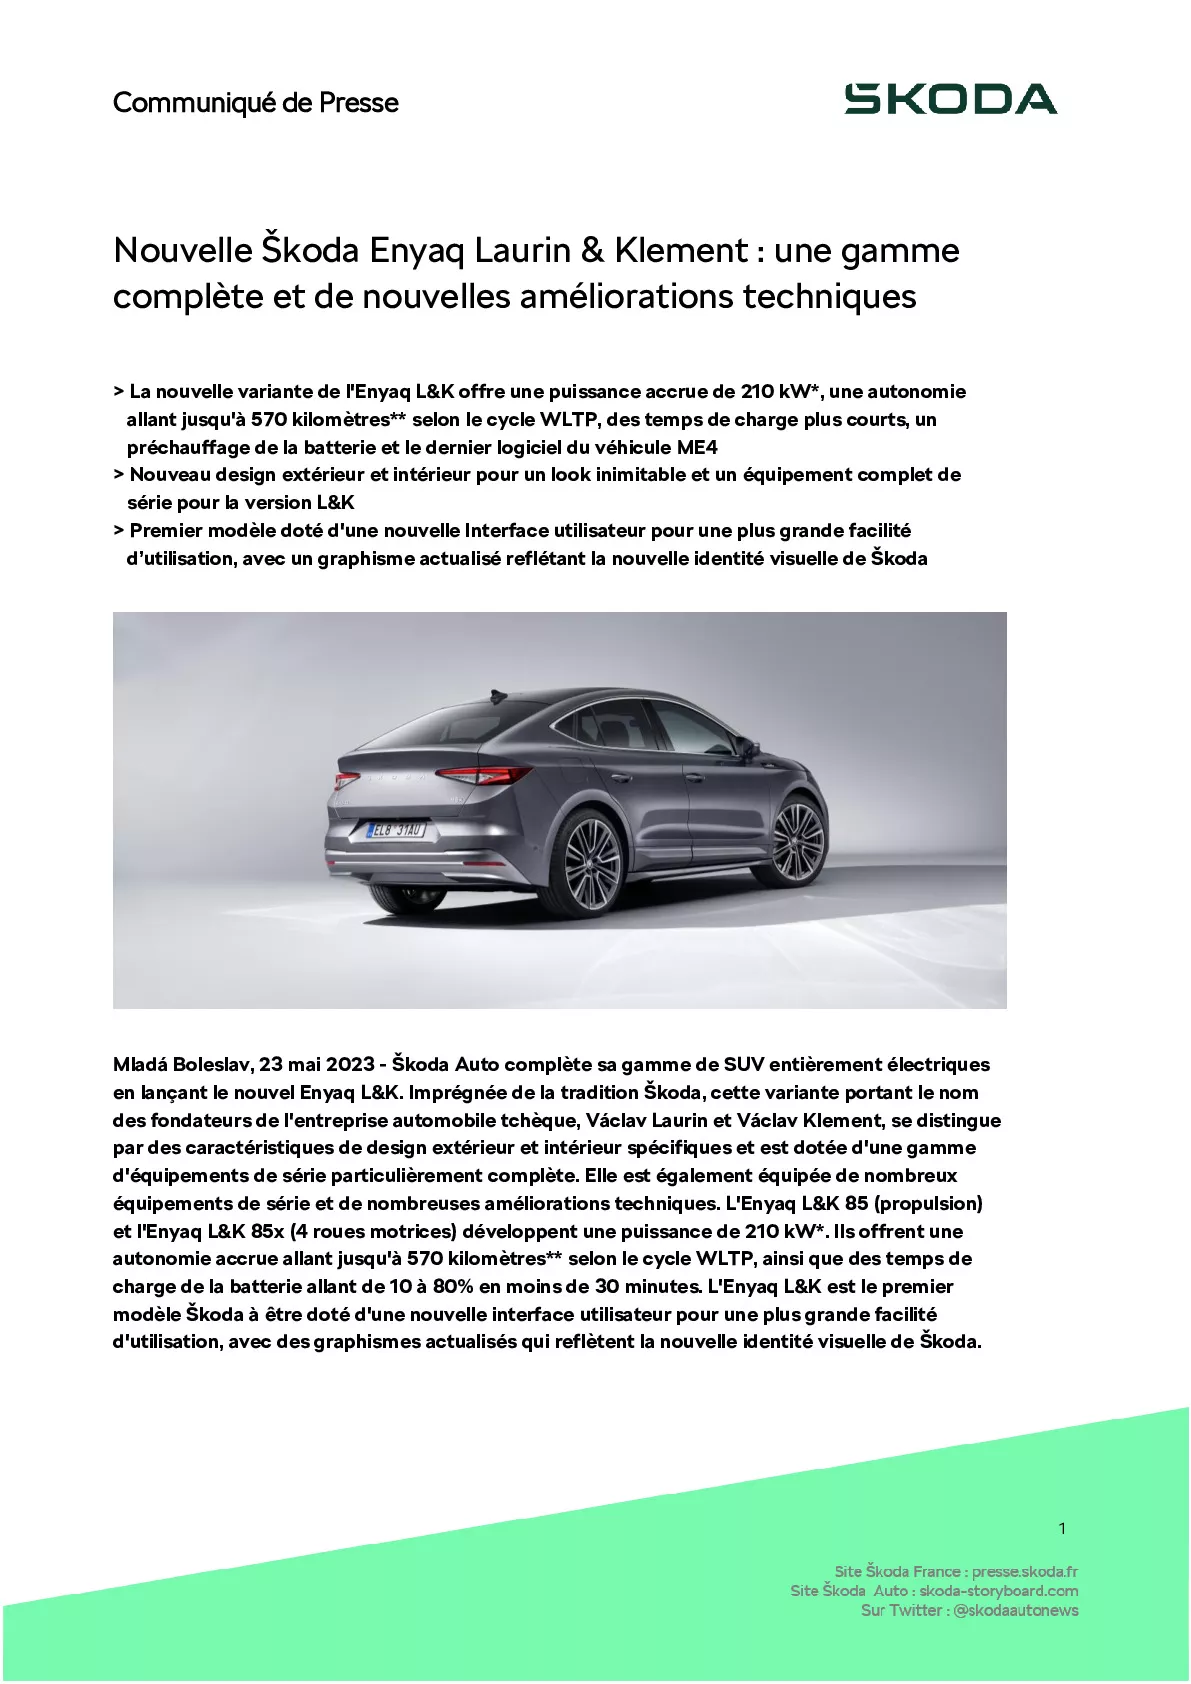 Škoda Enyaq Laurin & Klement : mise à jour et autonomie majorée